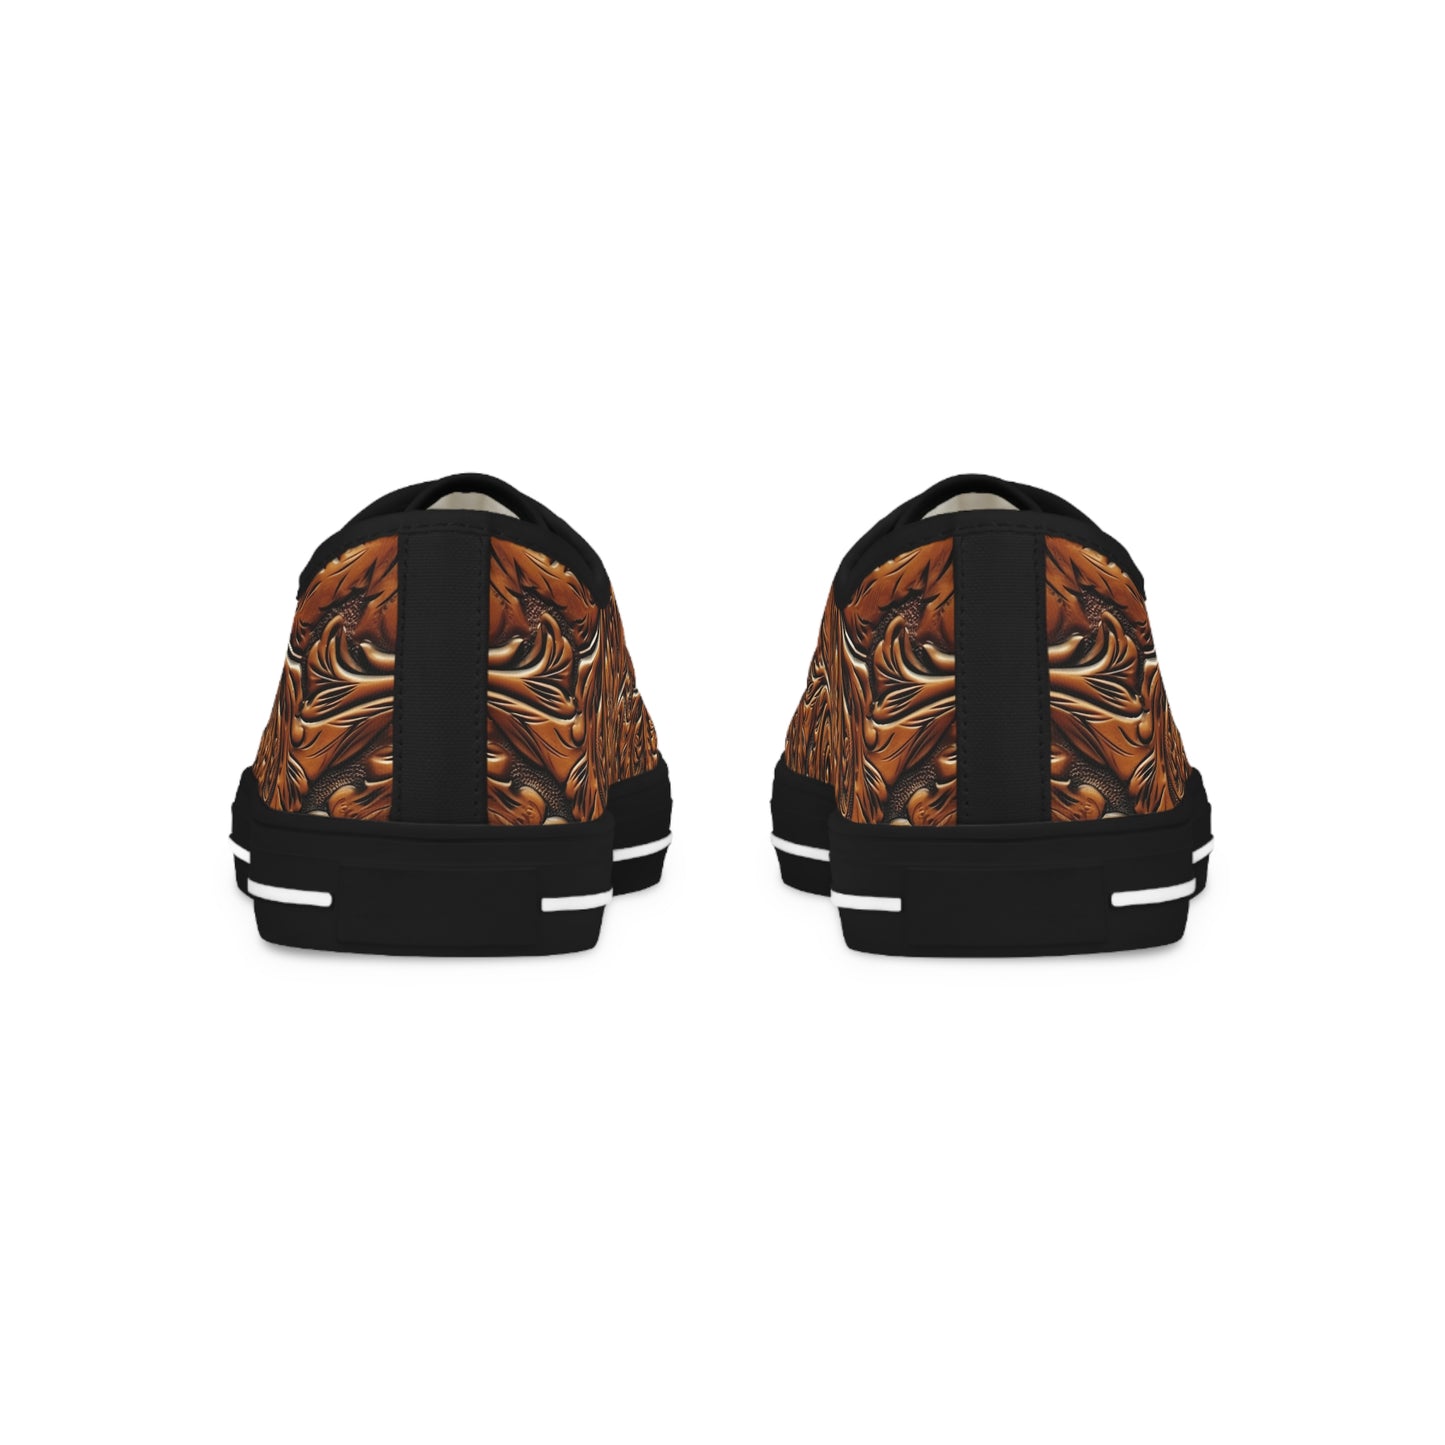 Tooled Leather Men's Low-Top Sneakers (Black) by Studio Ten Design